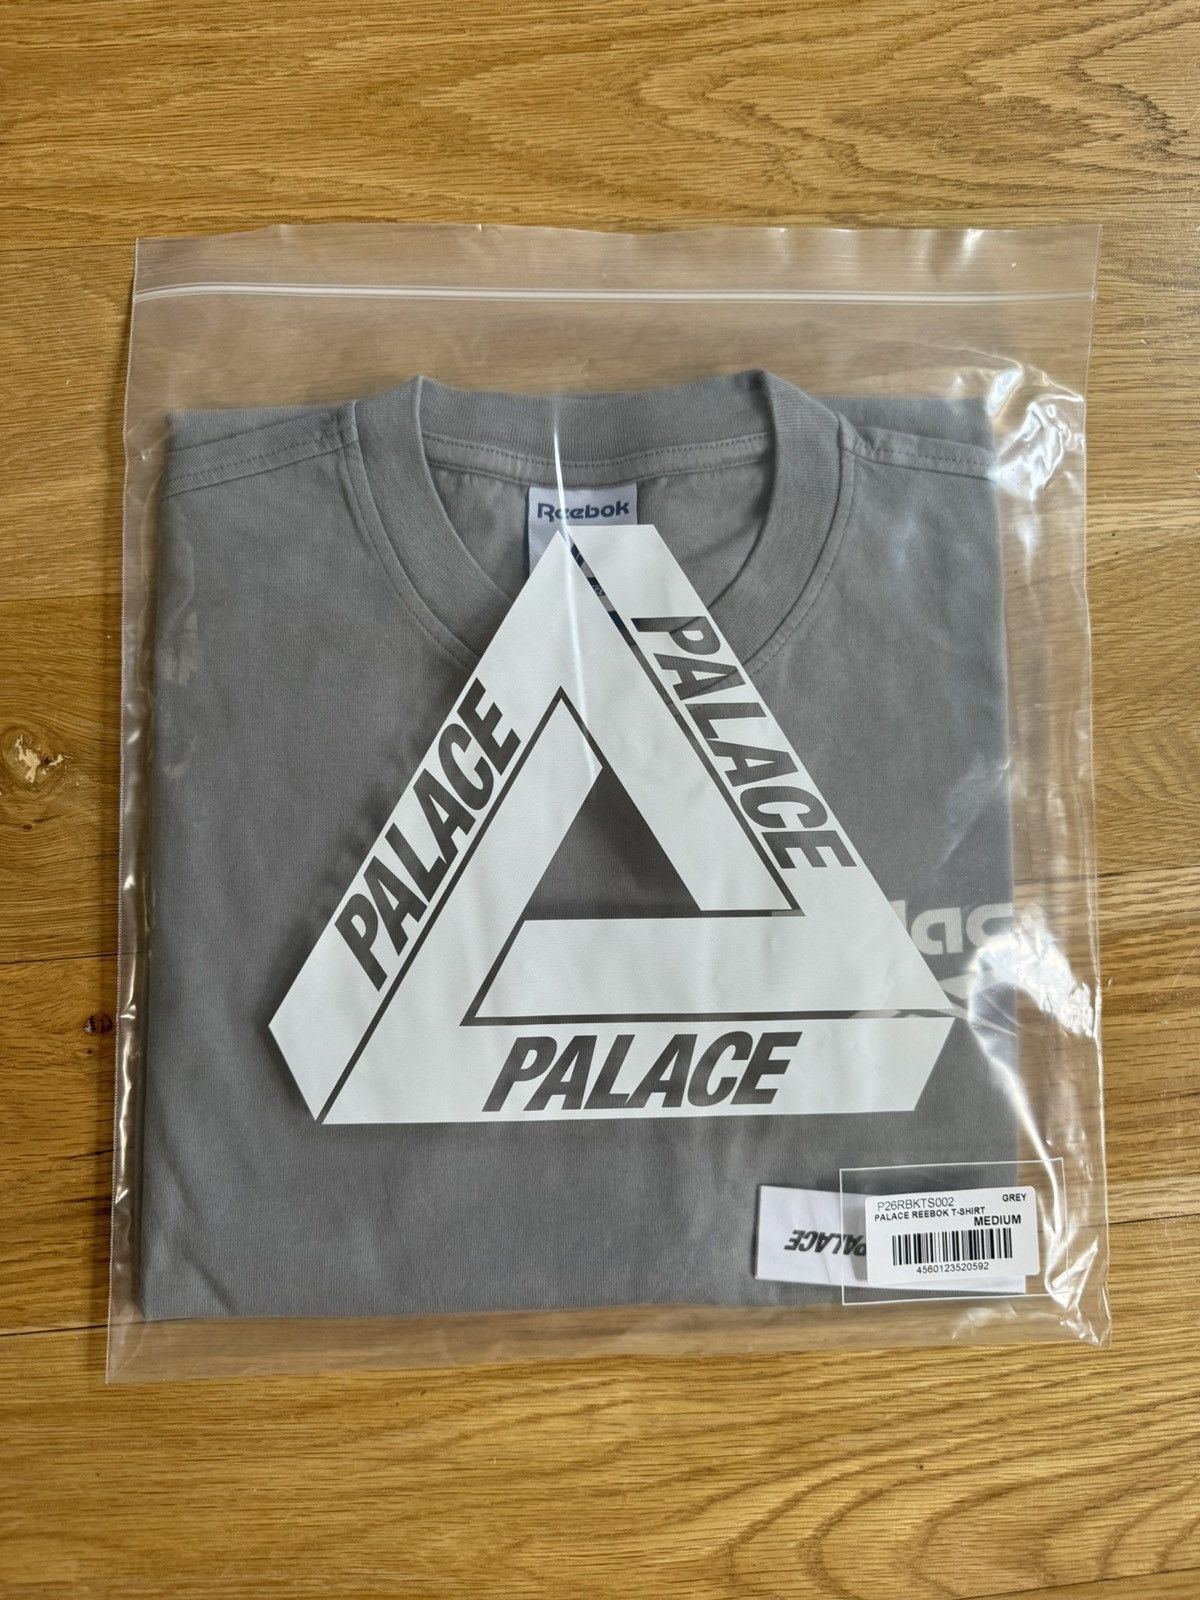 Palace Palace x Reebok T-Shirt Grey Sz M | Grailed